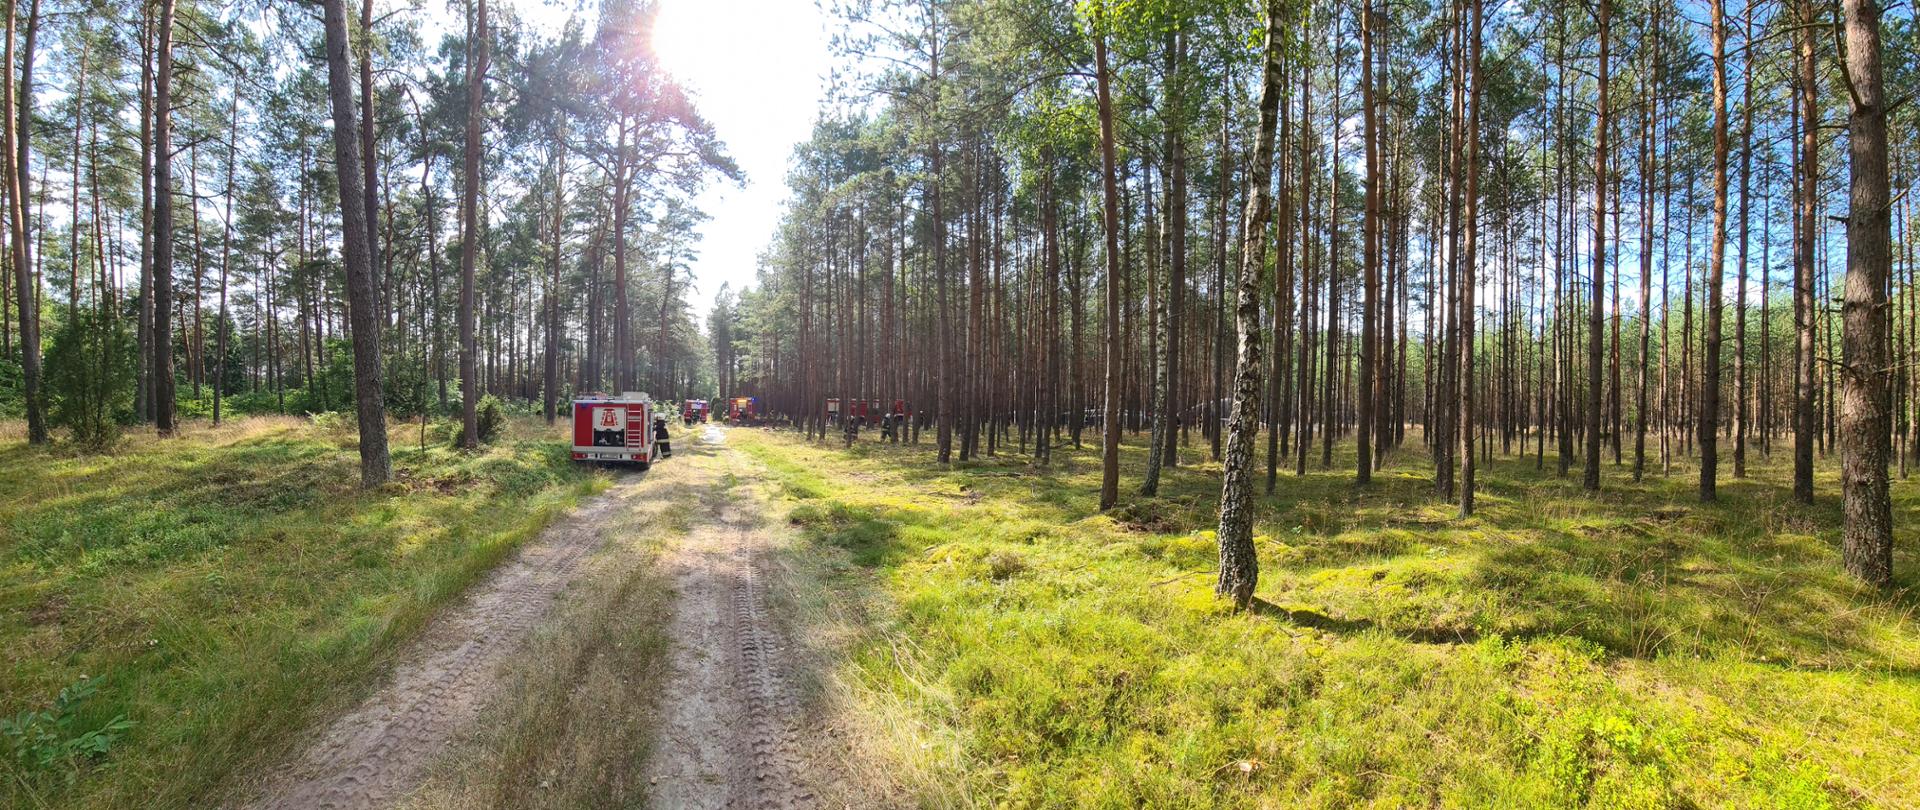 Zdjęcie prawie całego miejsca ćwiczeń. Widok przepięknego lasu wśród ,którego postawione są samochody straży pożarnej, na drogach dojazdowych do miejsca pożaru. 